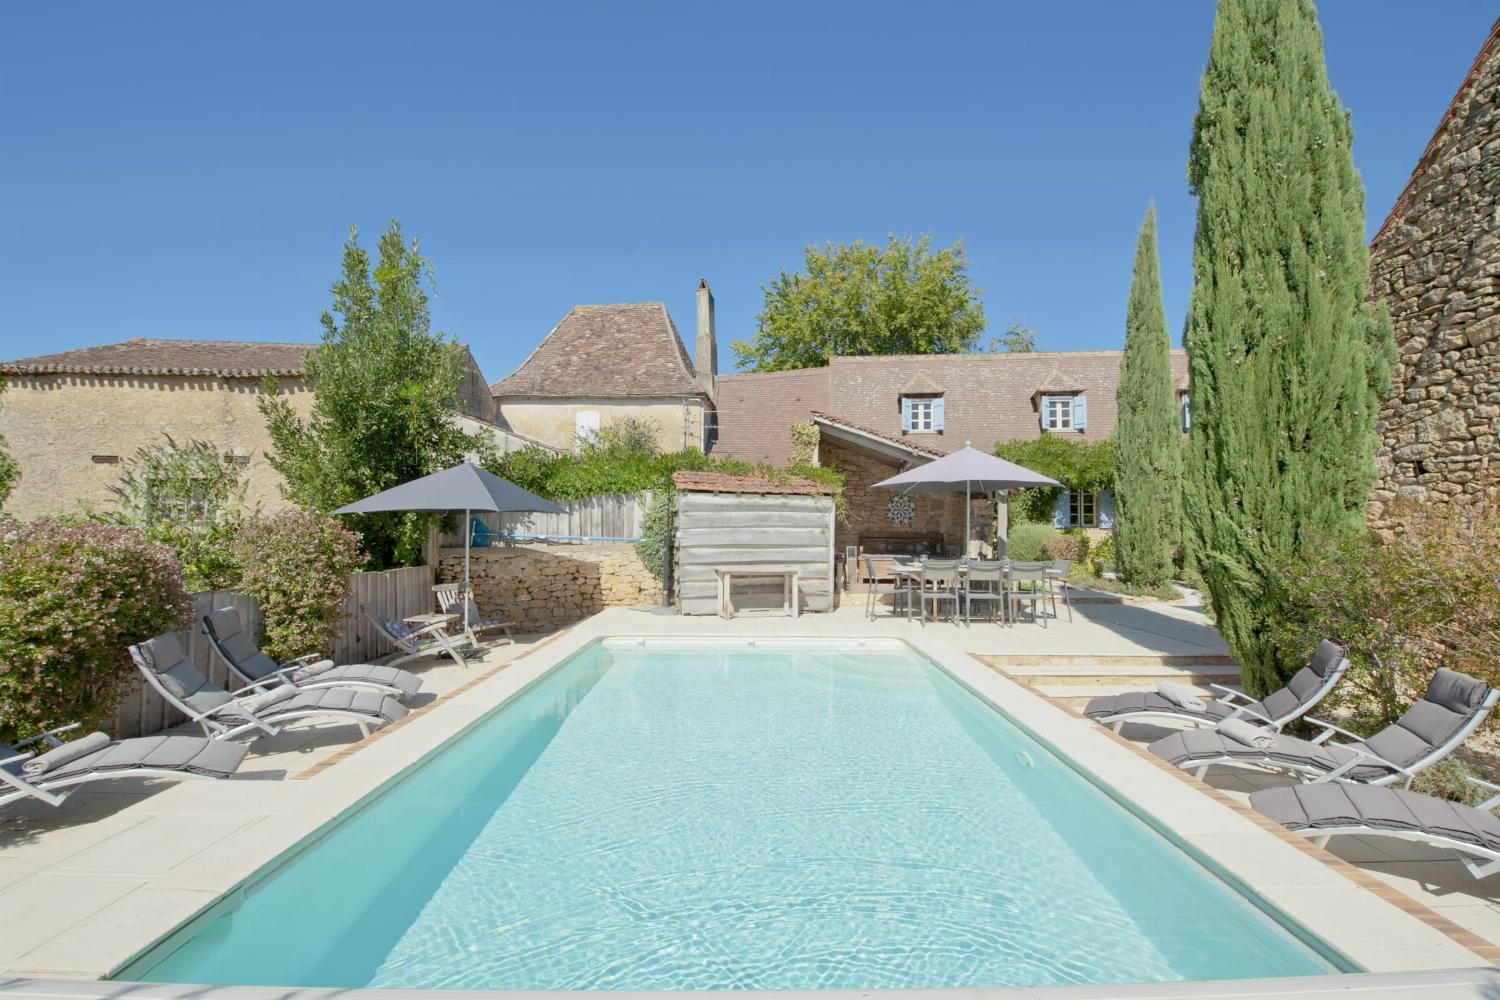 Location maison en Dordogne avec piscine privée